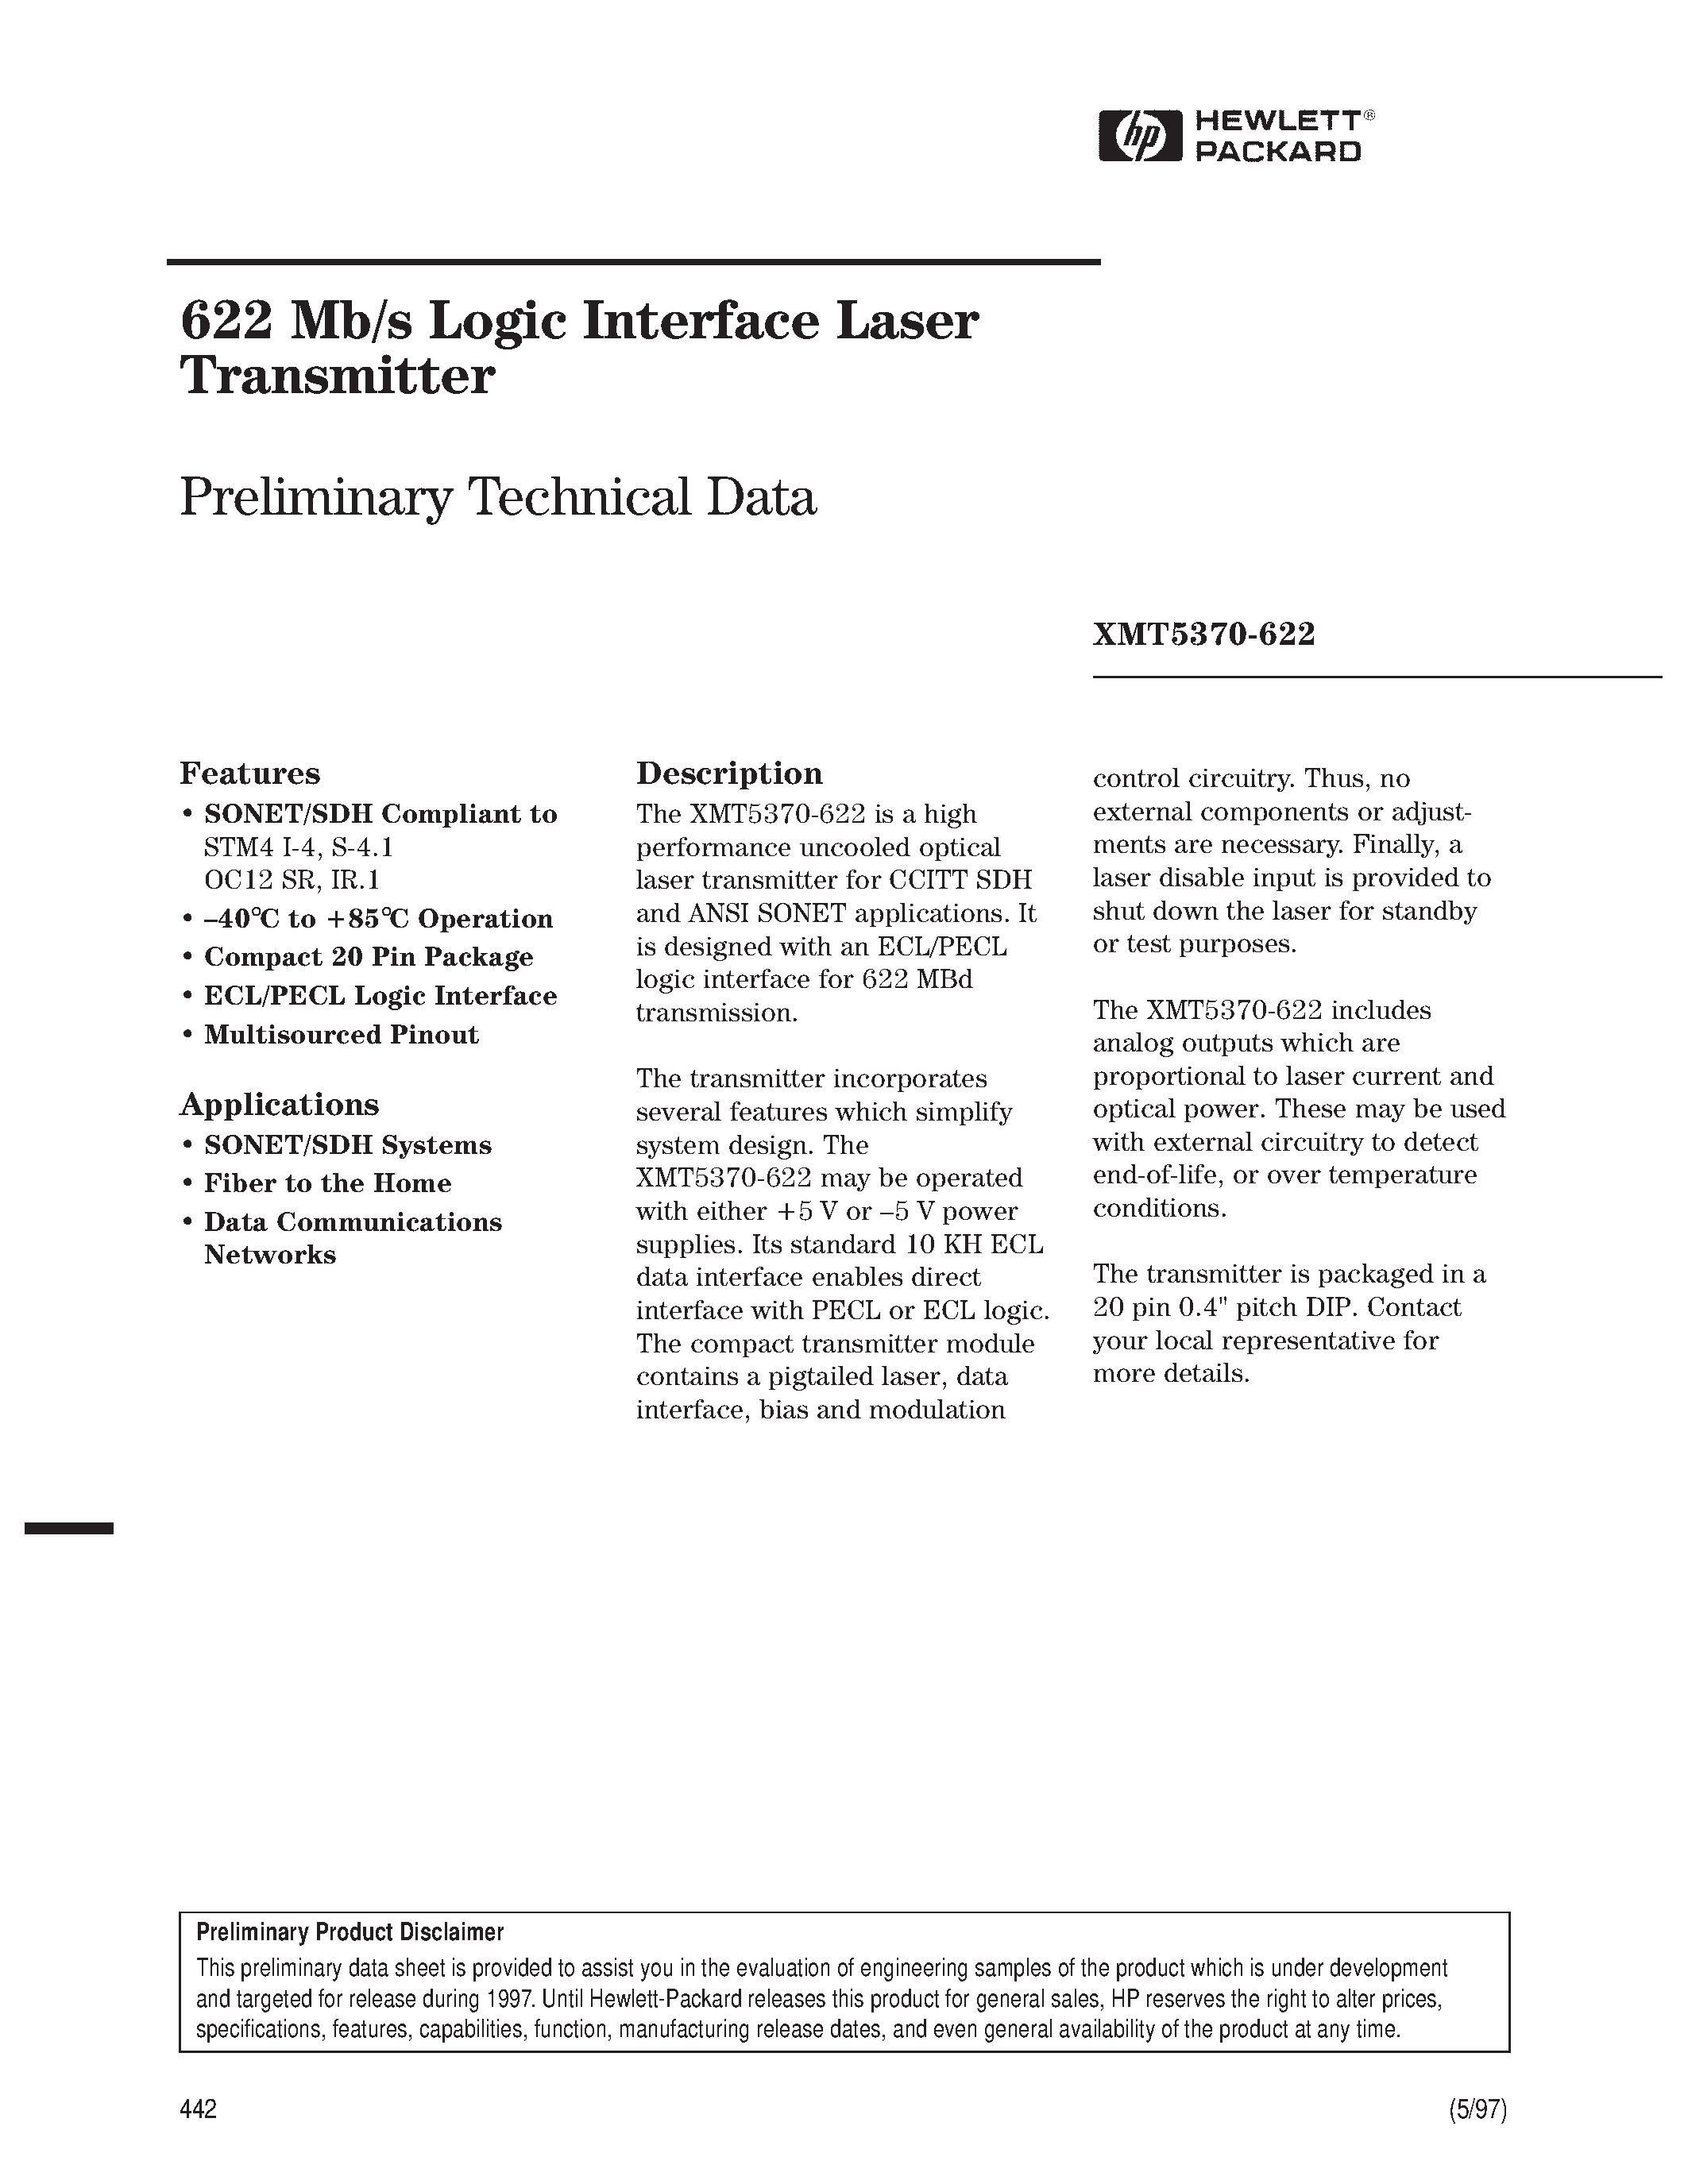 Datasheet XMT5360A-155-SC - 622 Mb/s Logic Interface Laser Transmitter page 1